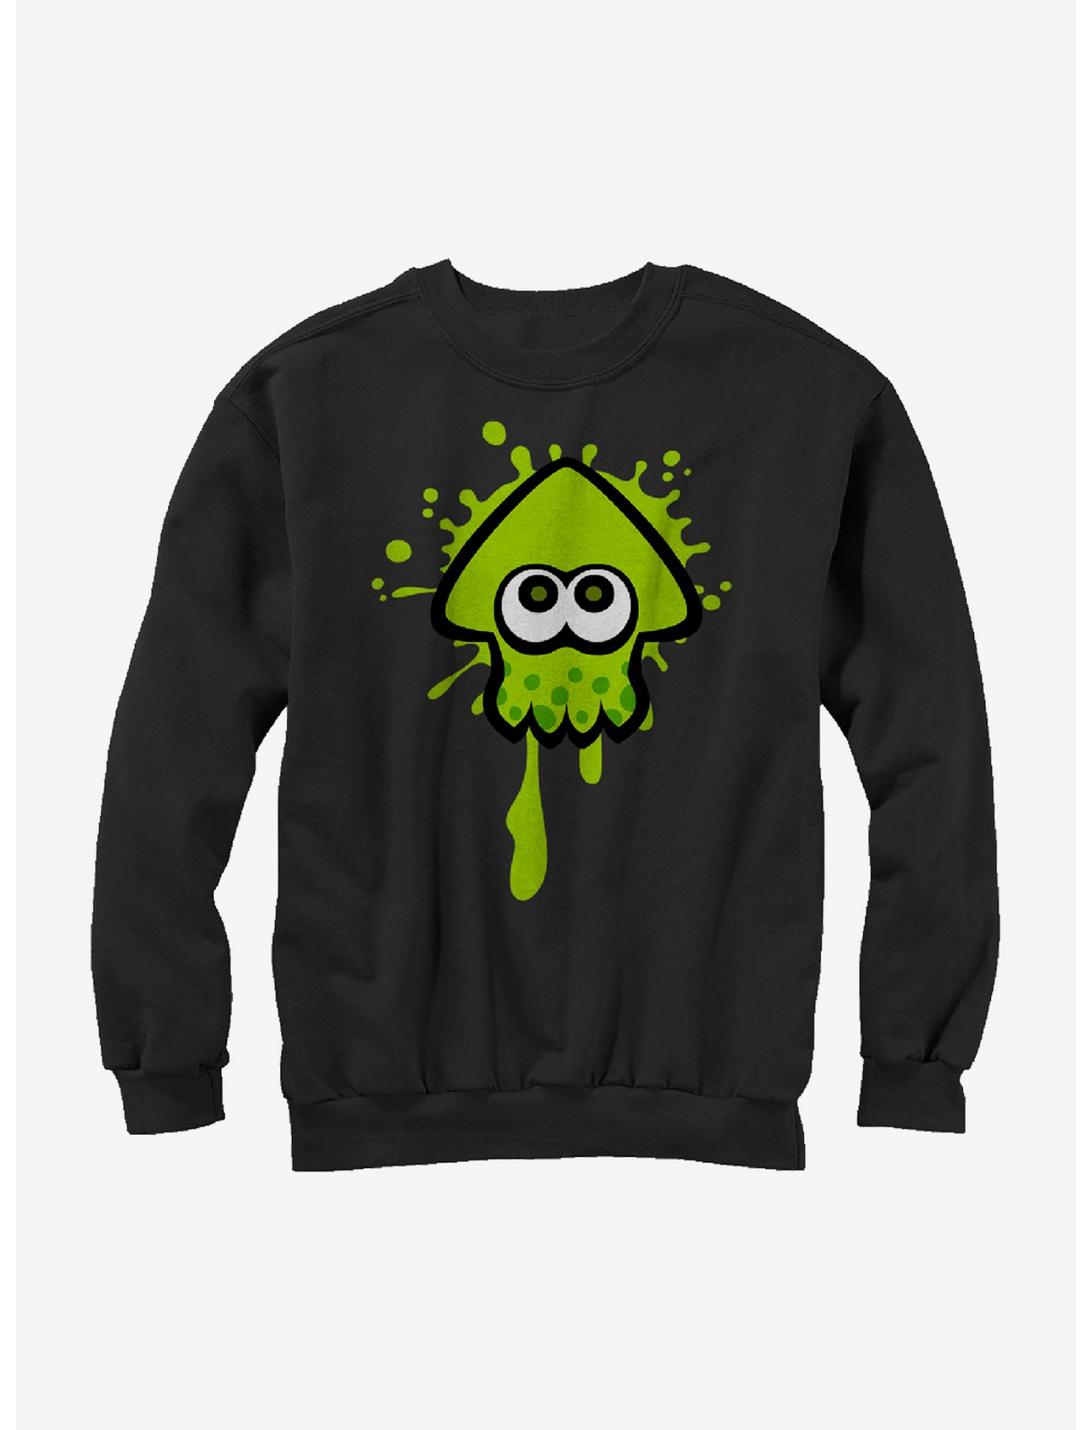 Nintendo Splatoon Lime Green Inkling Squid Sweatshirt, BLACK, hi-res